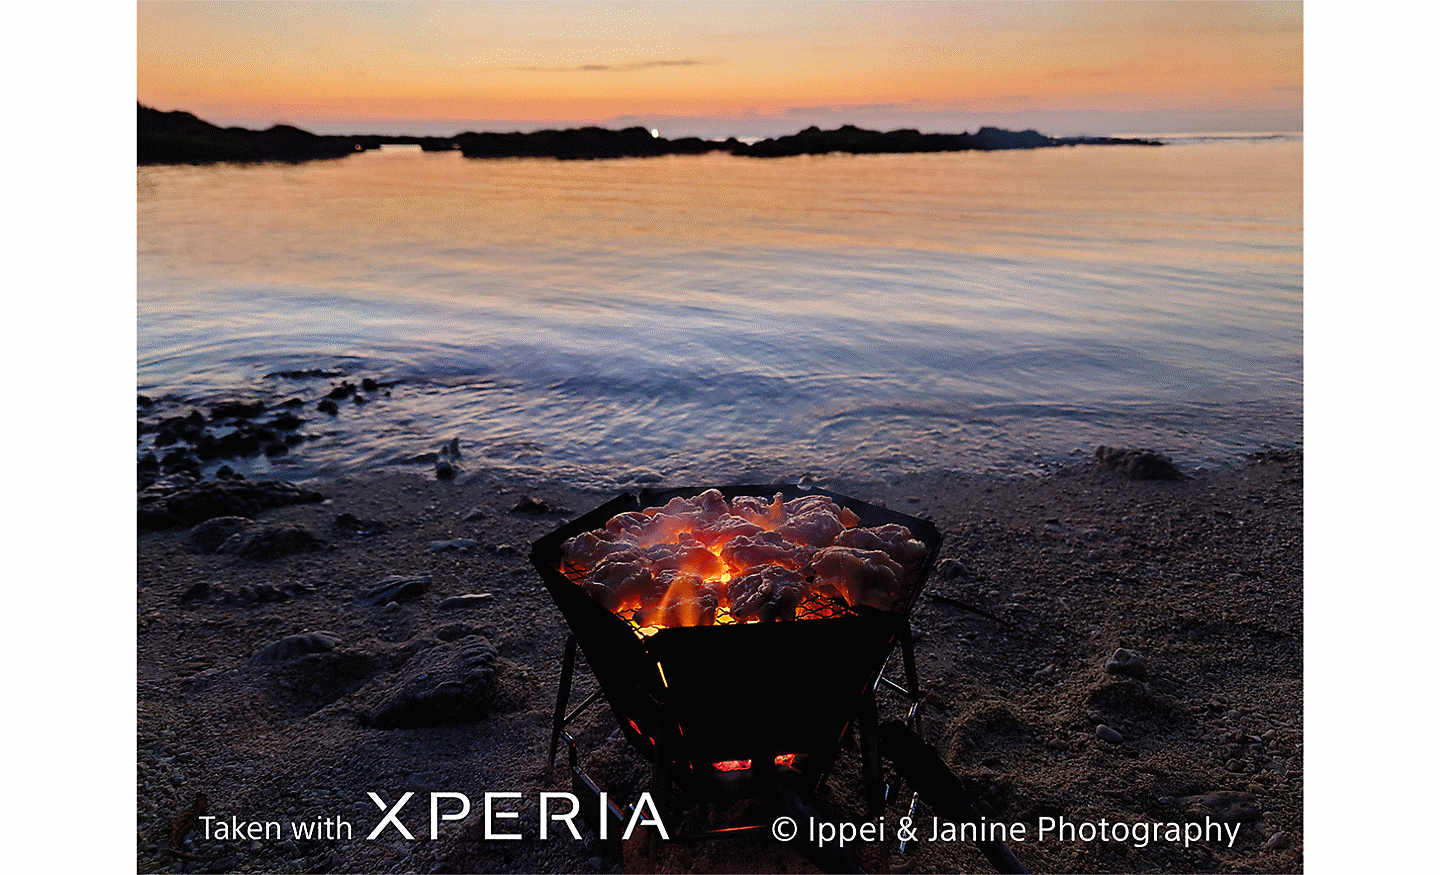 海灘上火光點點的火爐，隔著海水眺望日落。寫著「使用 XPERIA 拍攝 ©Ippei & Janine Photography」的文字。